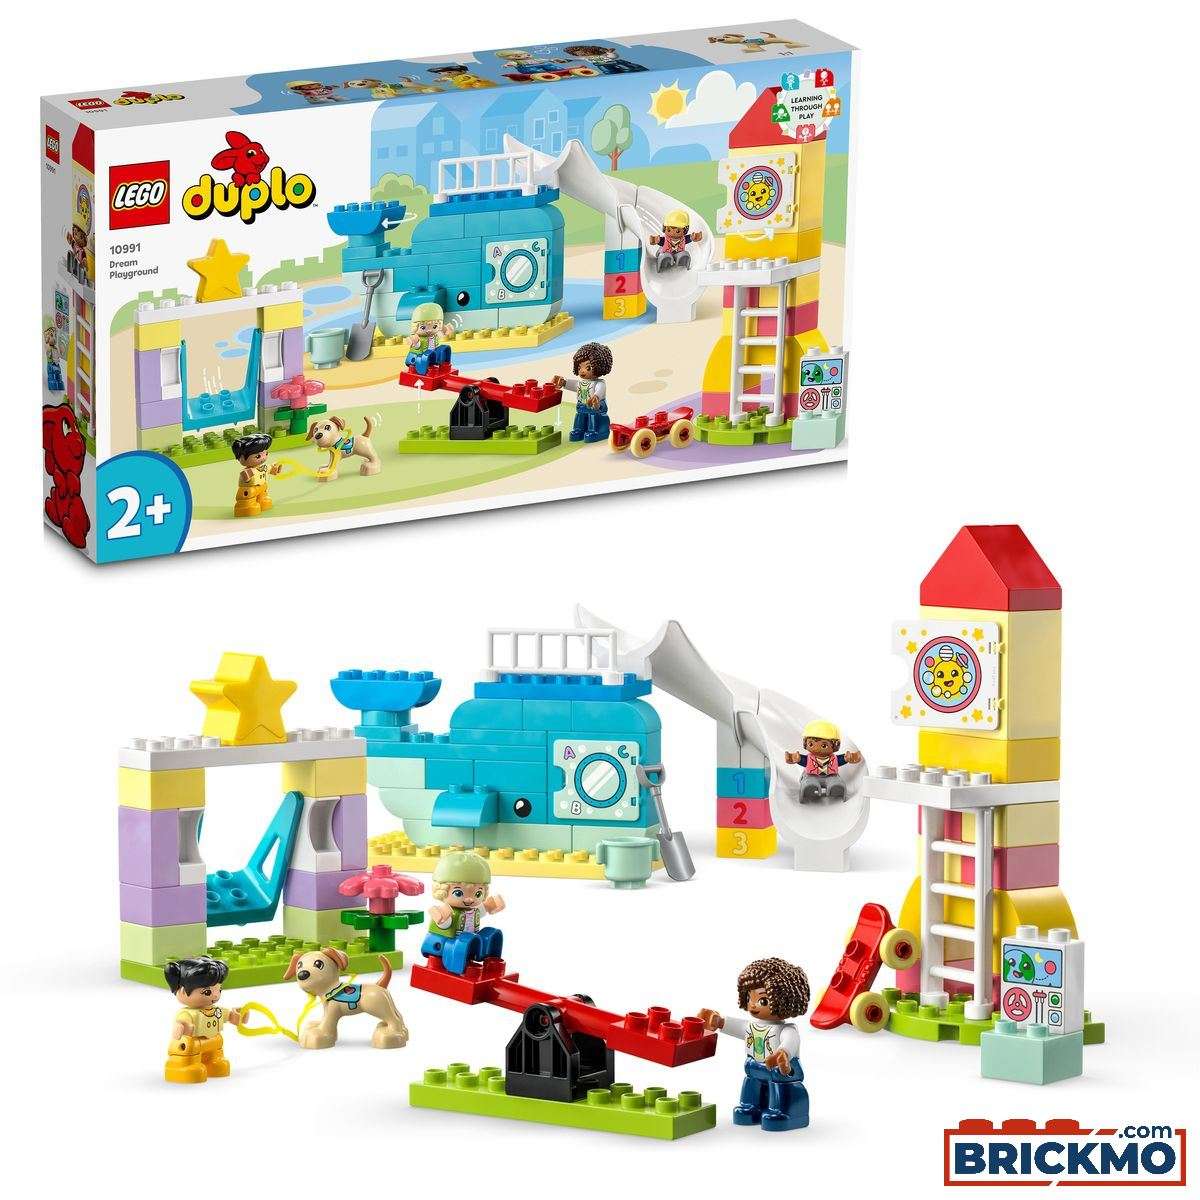 LEGO Duplo 10991 Parque Infantil de Sonho 10991